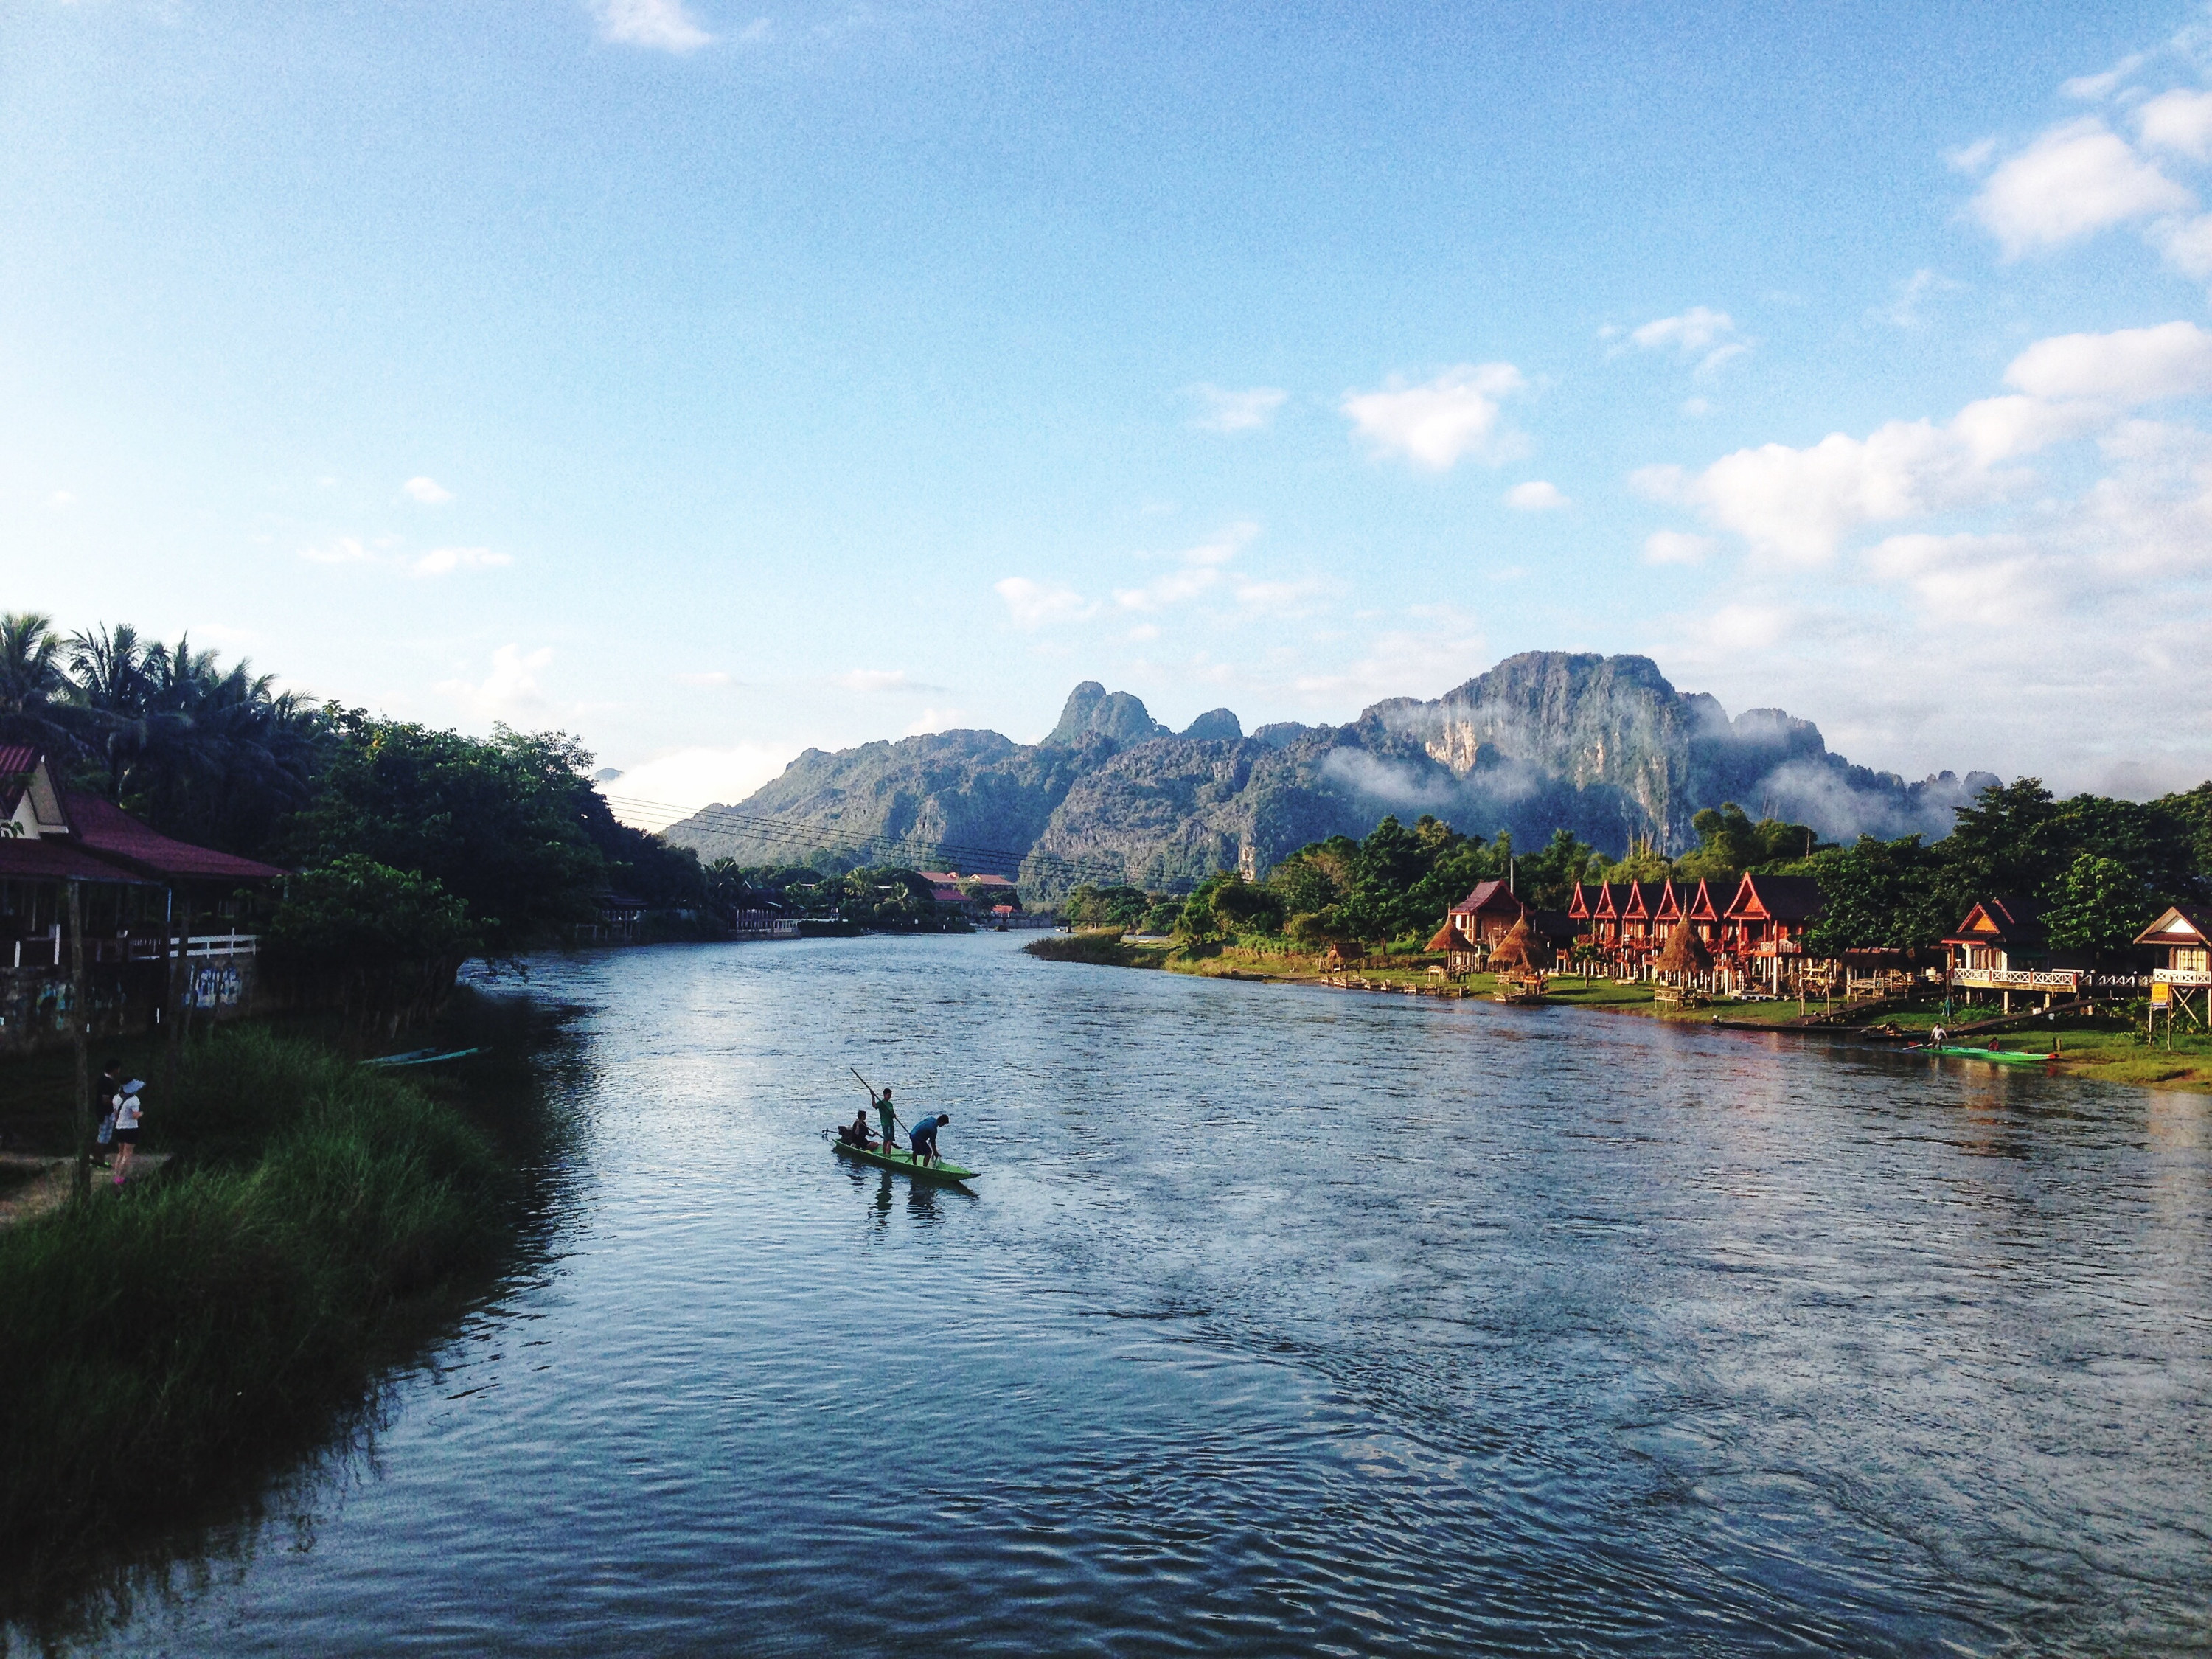 A scenic lake in Vientiane, Laos.